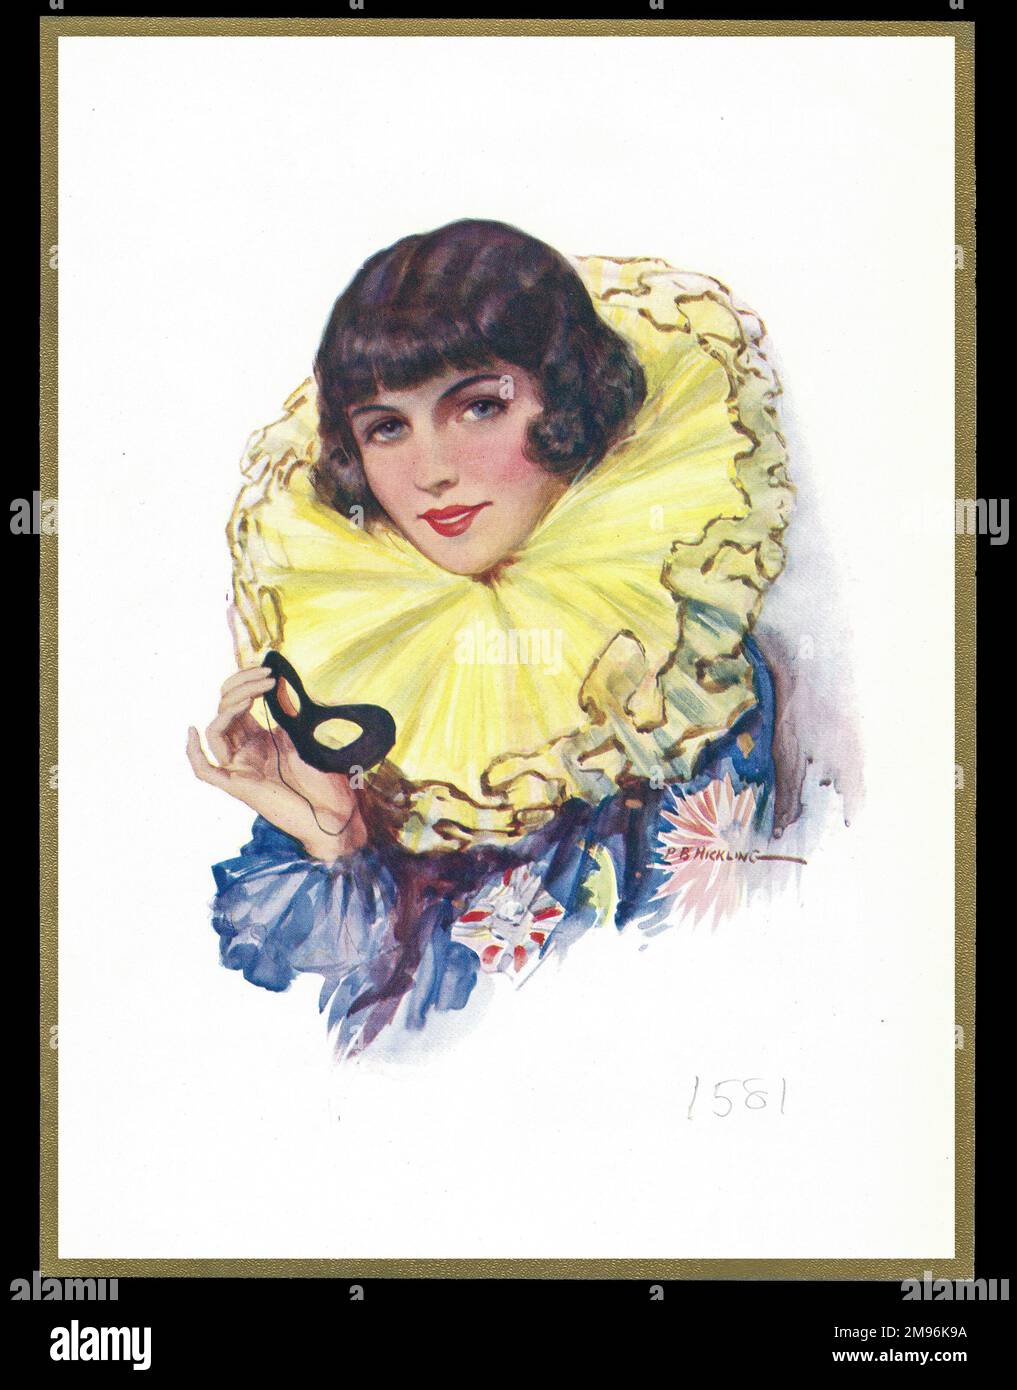 Schokoladenschachtel mit einer Dame im Karnevalskostüm, einer großen gelben Rübe um den Hals und einer schwarzen Maske in der Hand. Stockfoto